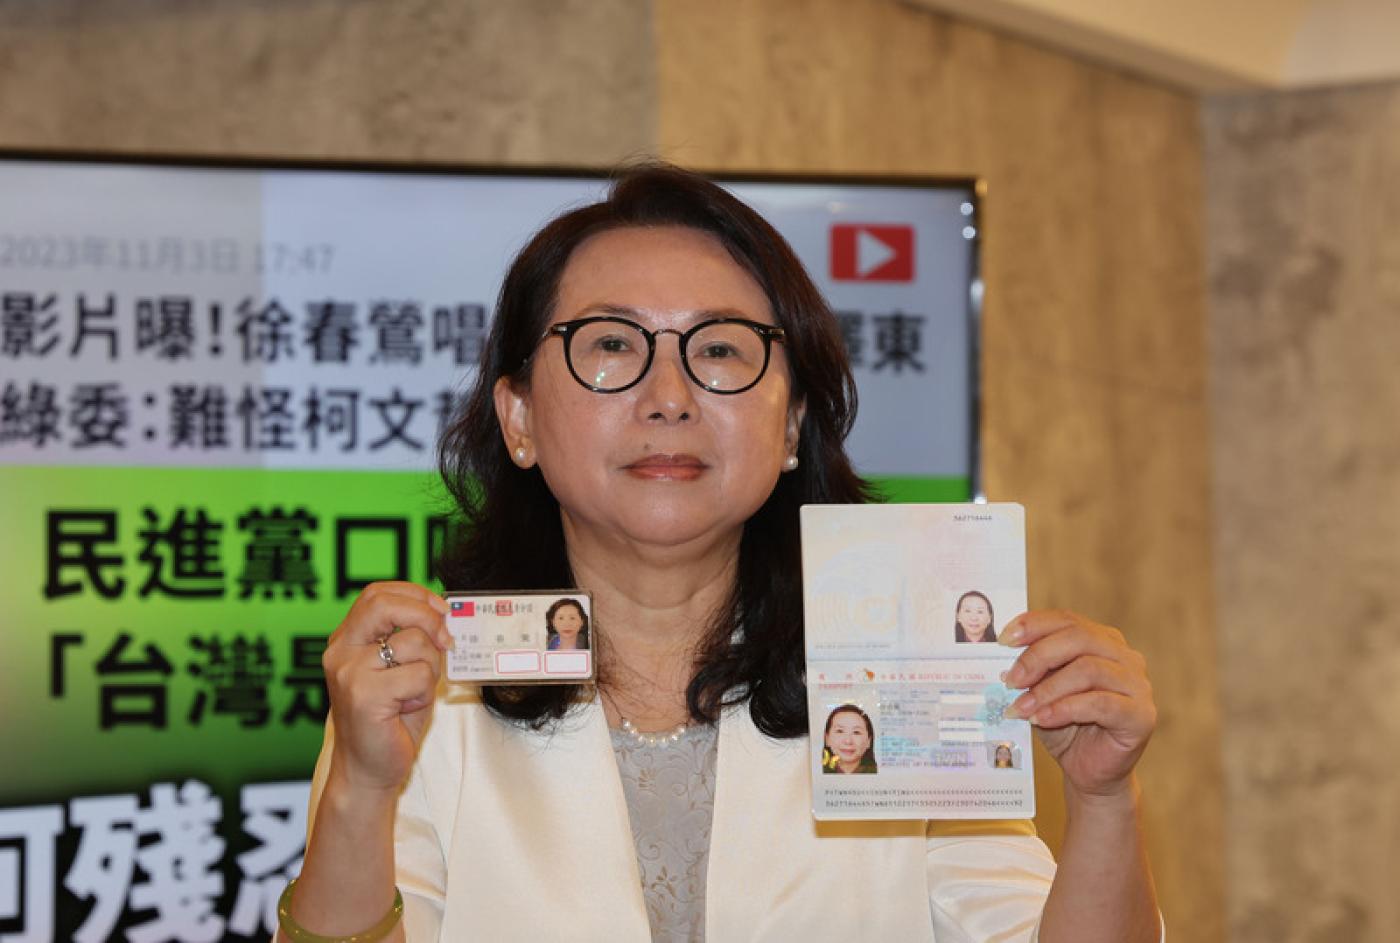 徐春鶯5日展示合法取得的中華民國身分證、護照，否認自己是共產黨員。中央社